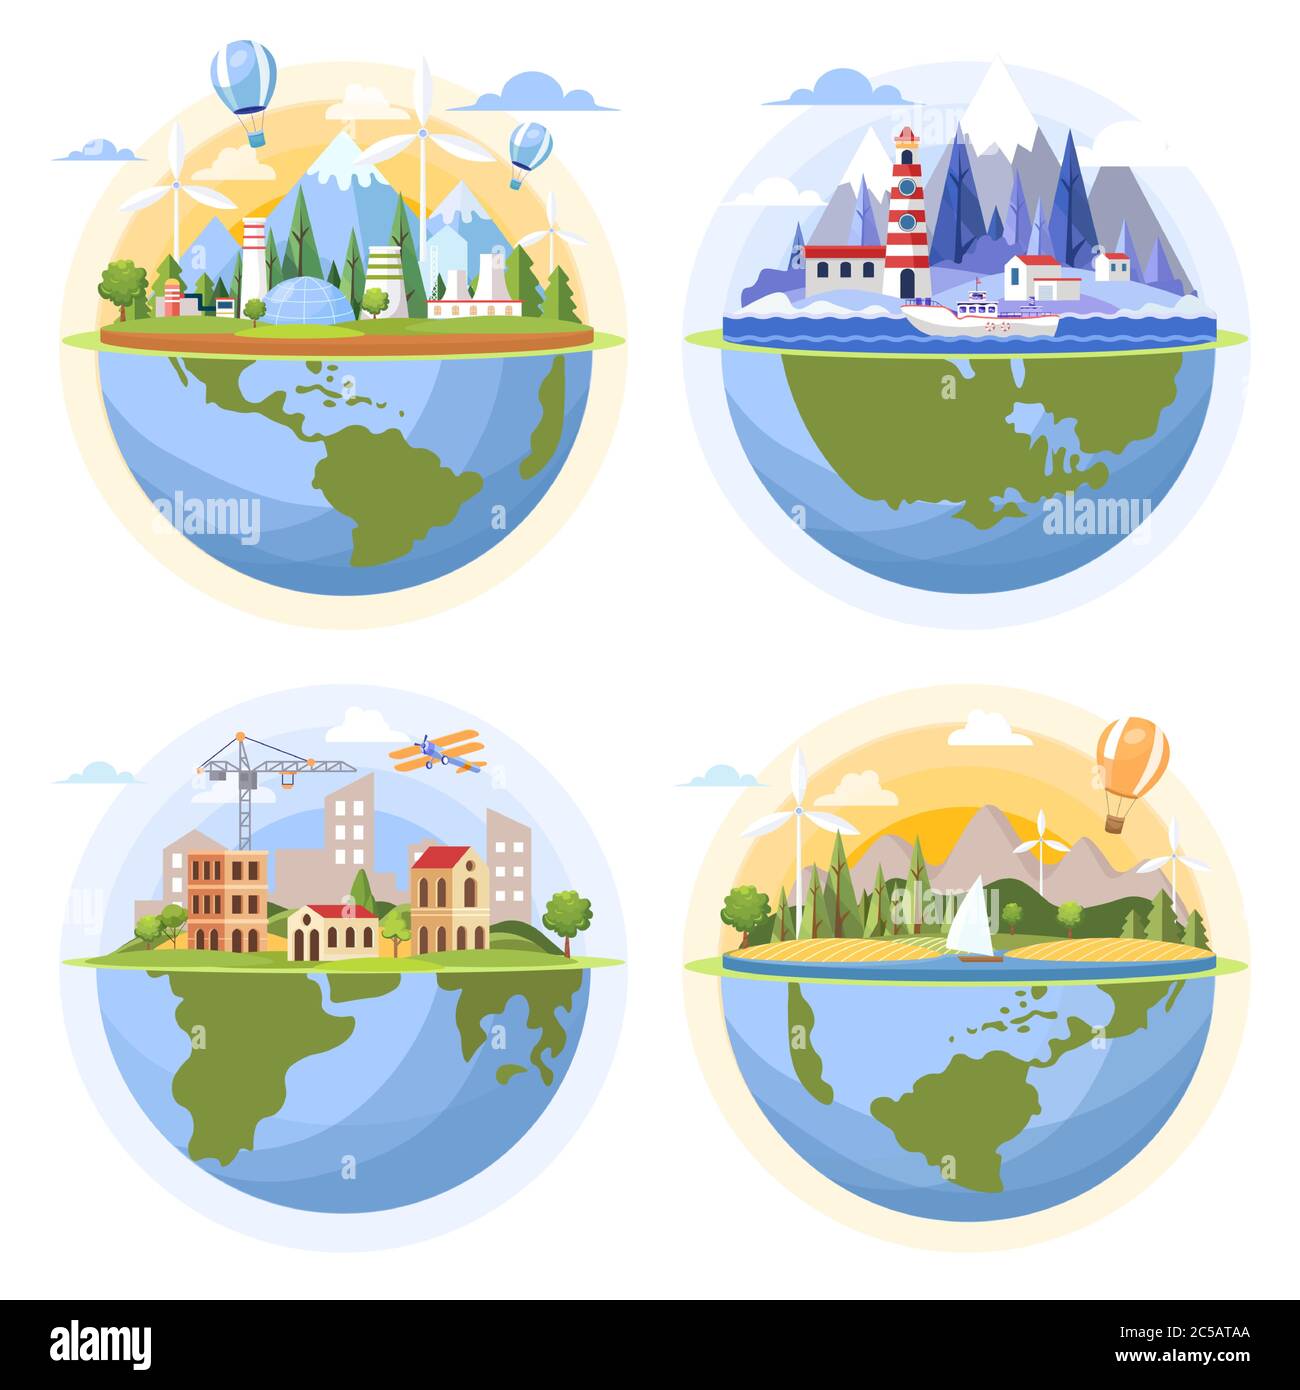 Globi con paesaggi diversi vettore piatta illustrazione. Globi con fabbrica nucleare e turbine eoliche, mare con faro e yacht, costruzione di città, paesaggio naturale con navi. Illustrazione Vettoriale